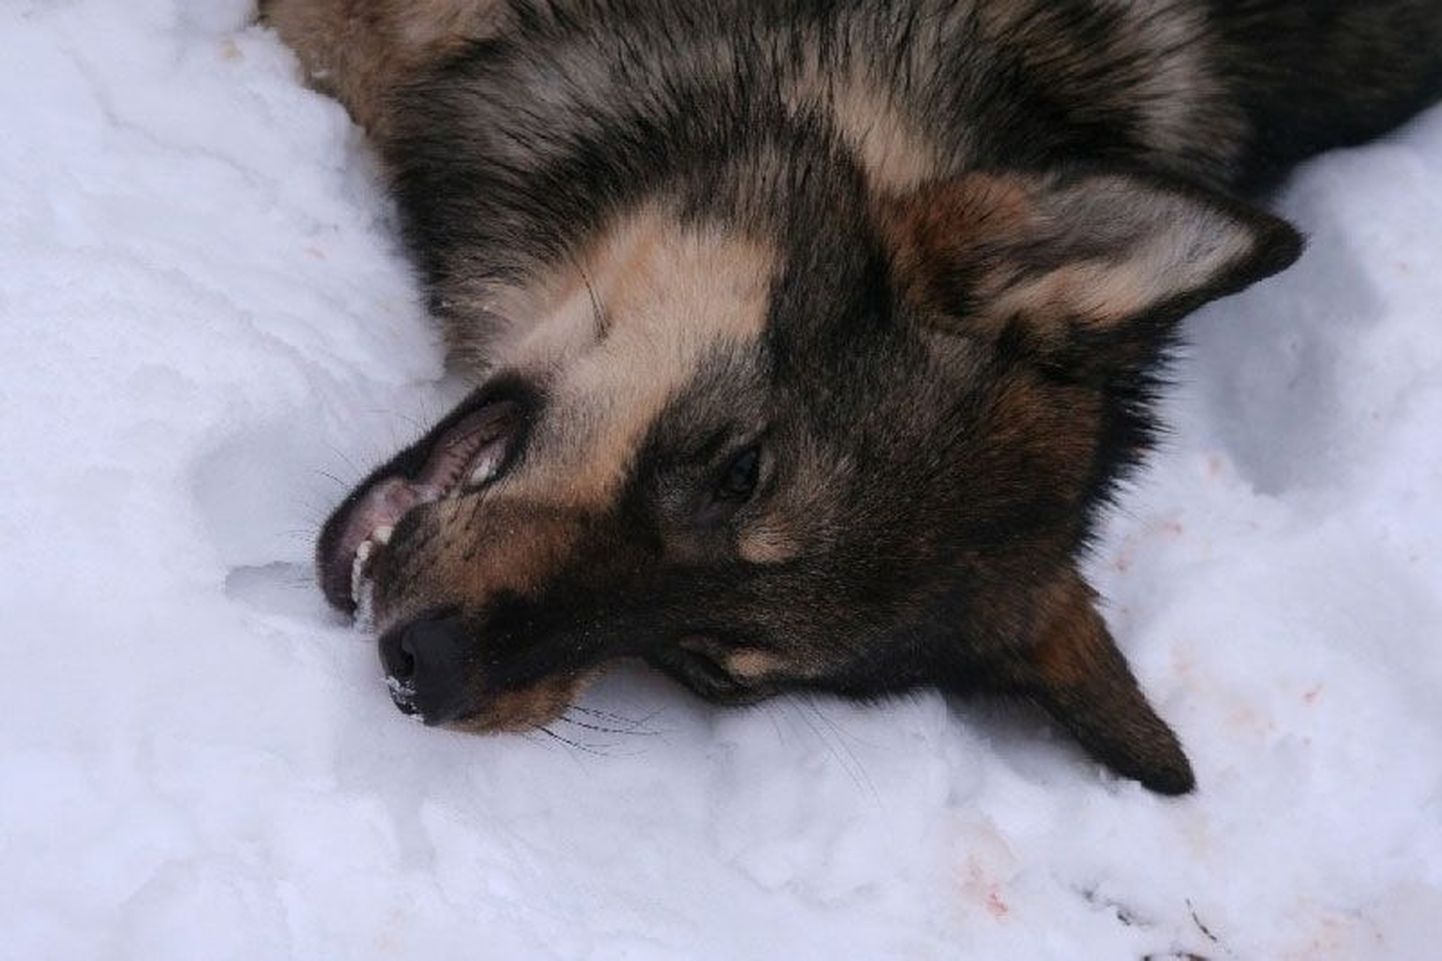 Зимой 2009 года охотники уничтожили нескольких хищников из одной волчьей стаи. Если на нижнем фото изображен чистокровный волк, то изображенный на верхнем фото зверь вызвал среди охотников сомнения. Генетический анализ подтвердил — речь идет о гибриде собаки и волка.